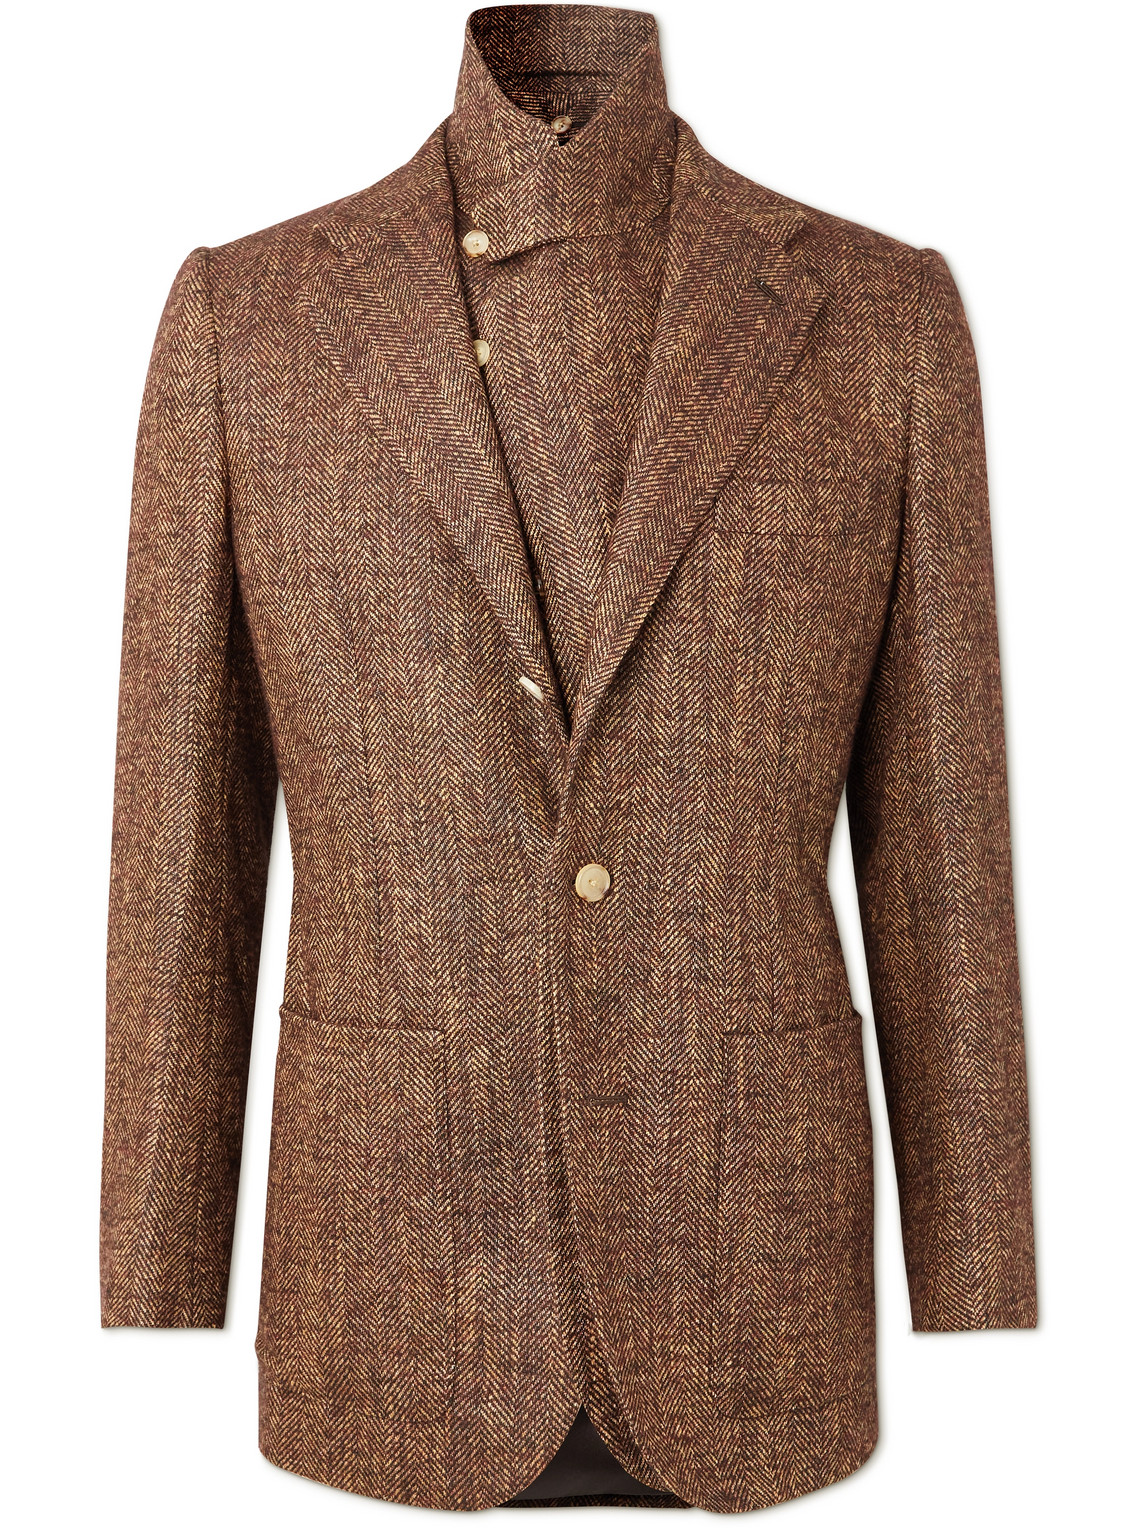 Layered Herringbone Tweed Suit Jacket